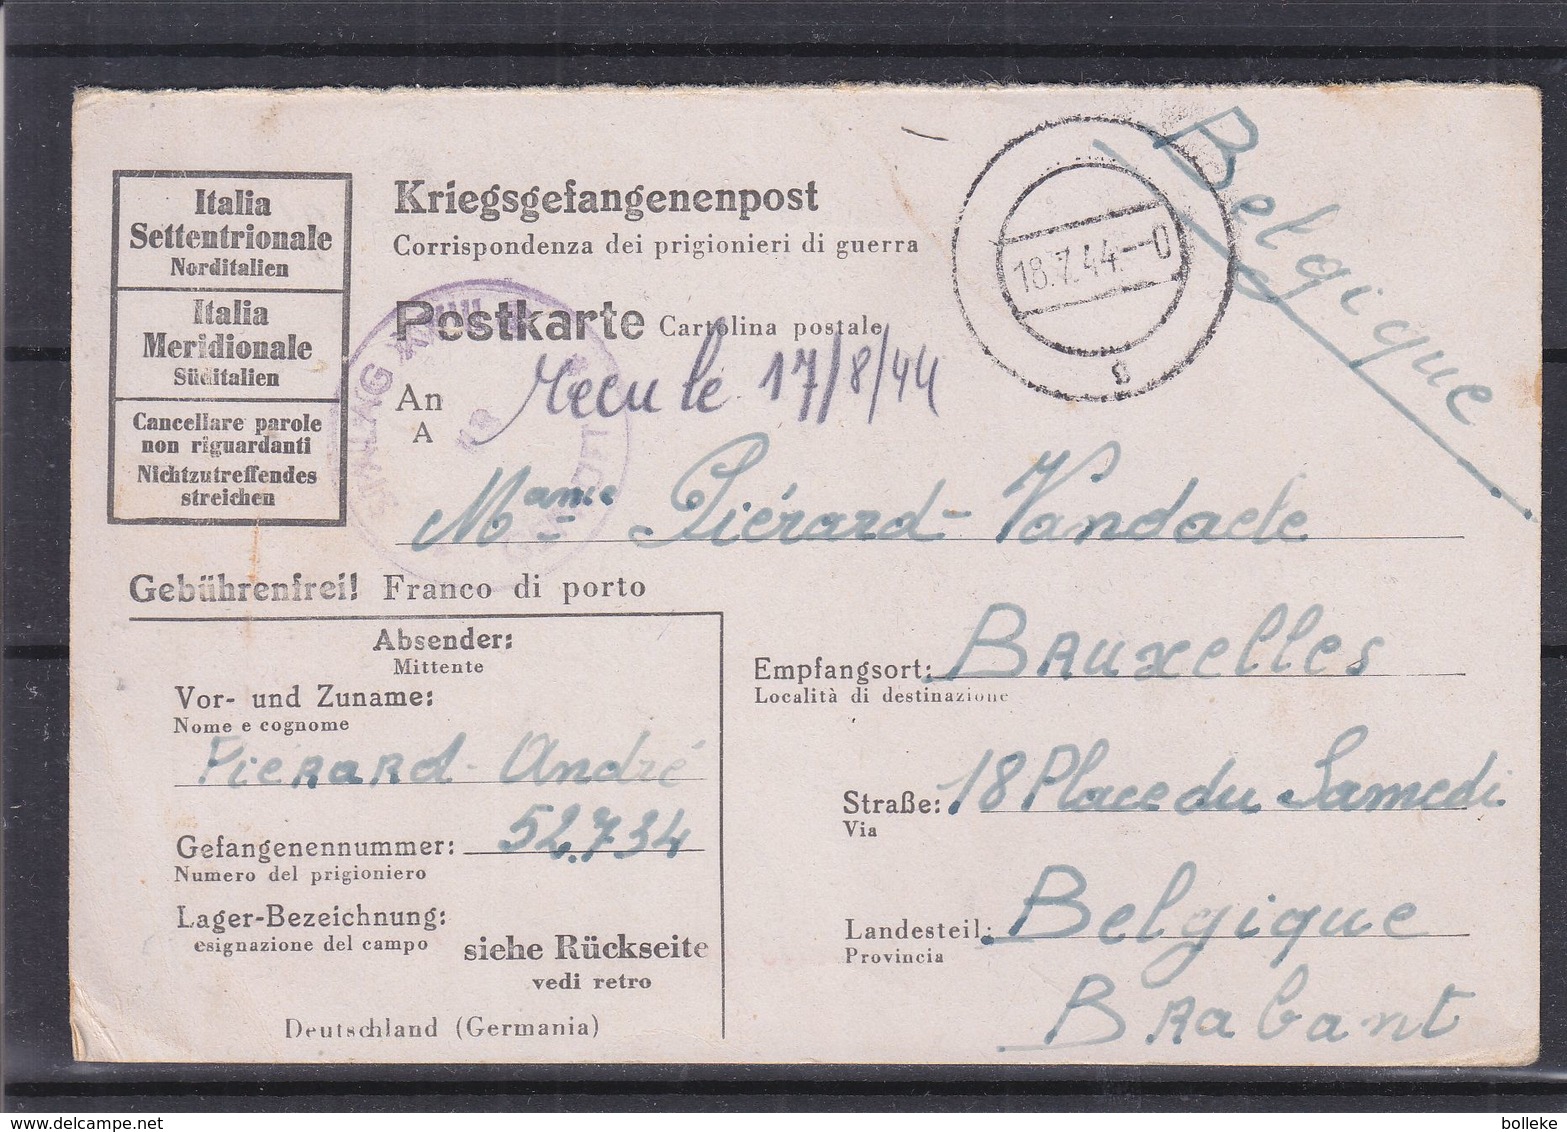 Italie - Carte Postale De 1944 - Prisonniers De Guerre - Kriegsgefangenenpost - Exp Vers Bruxelles - Avec Censure - Poststempel